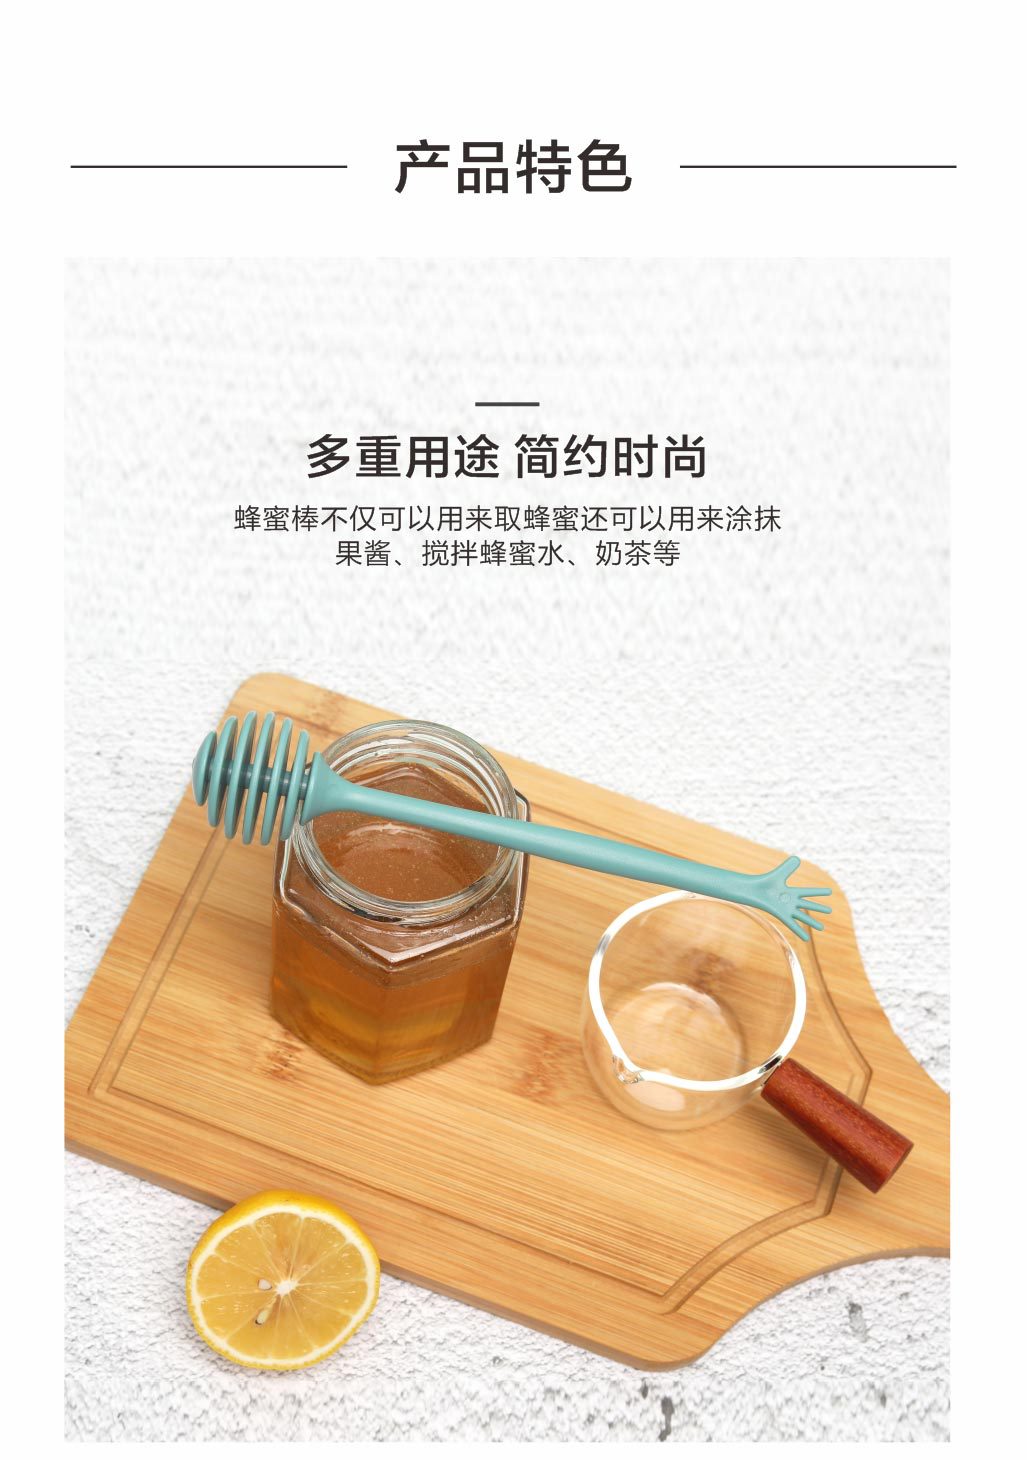 創意長柄蜂蜜攪拌棒 北歐色蜂蜜攪拌器 手掌造型長柄攪拌棒